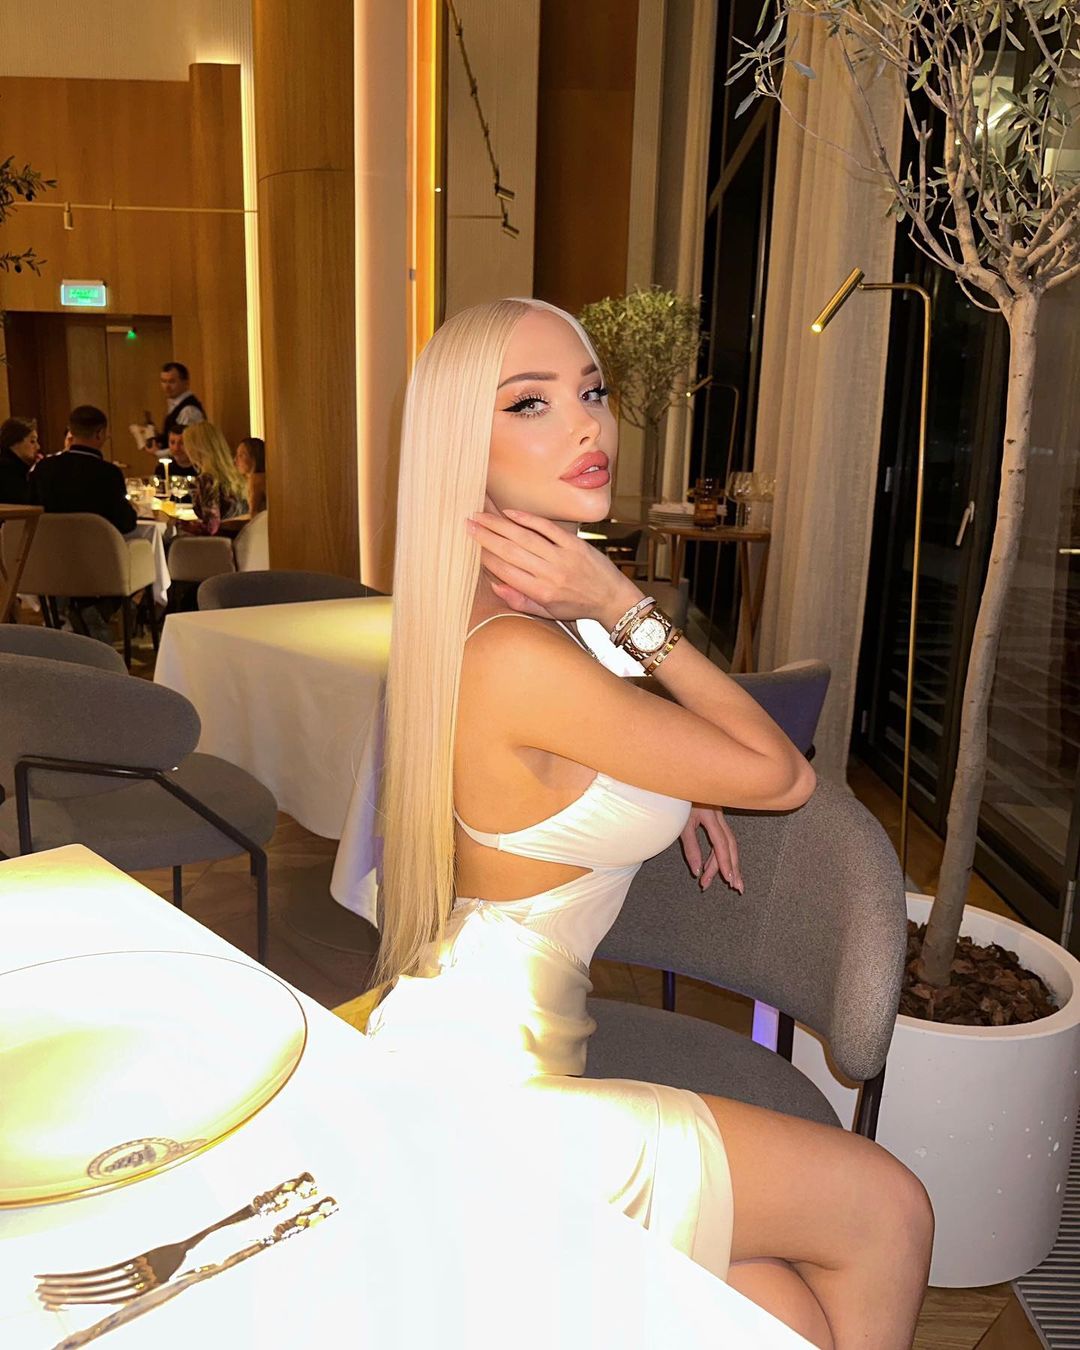 Angelina brezhenskaya 12 hottest pics, angelina brezhenskaya 12 instagram